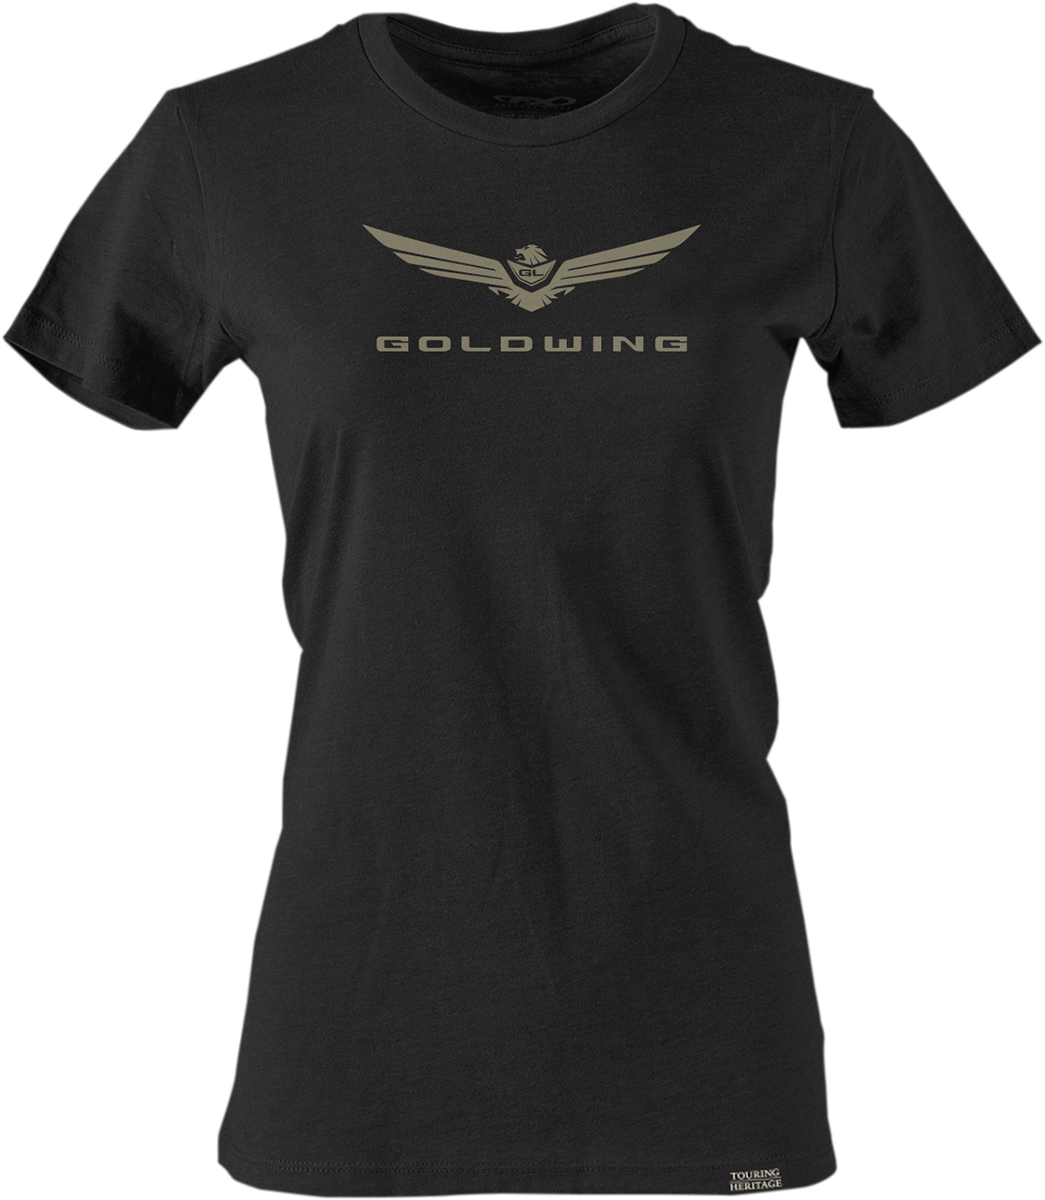 FACTORY EFFEX Women's Goldwing 2 T-Shirt - Black - Large 25-87854